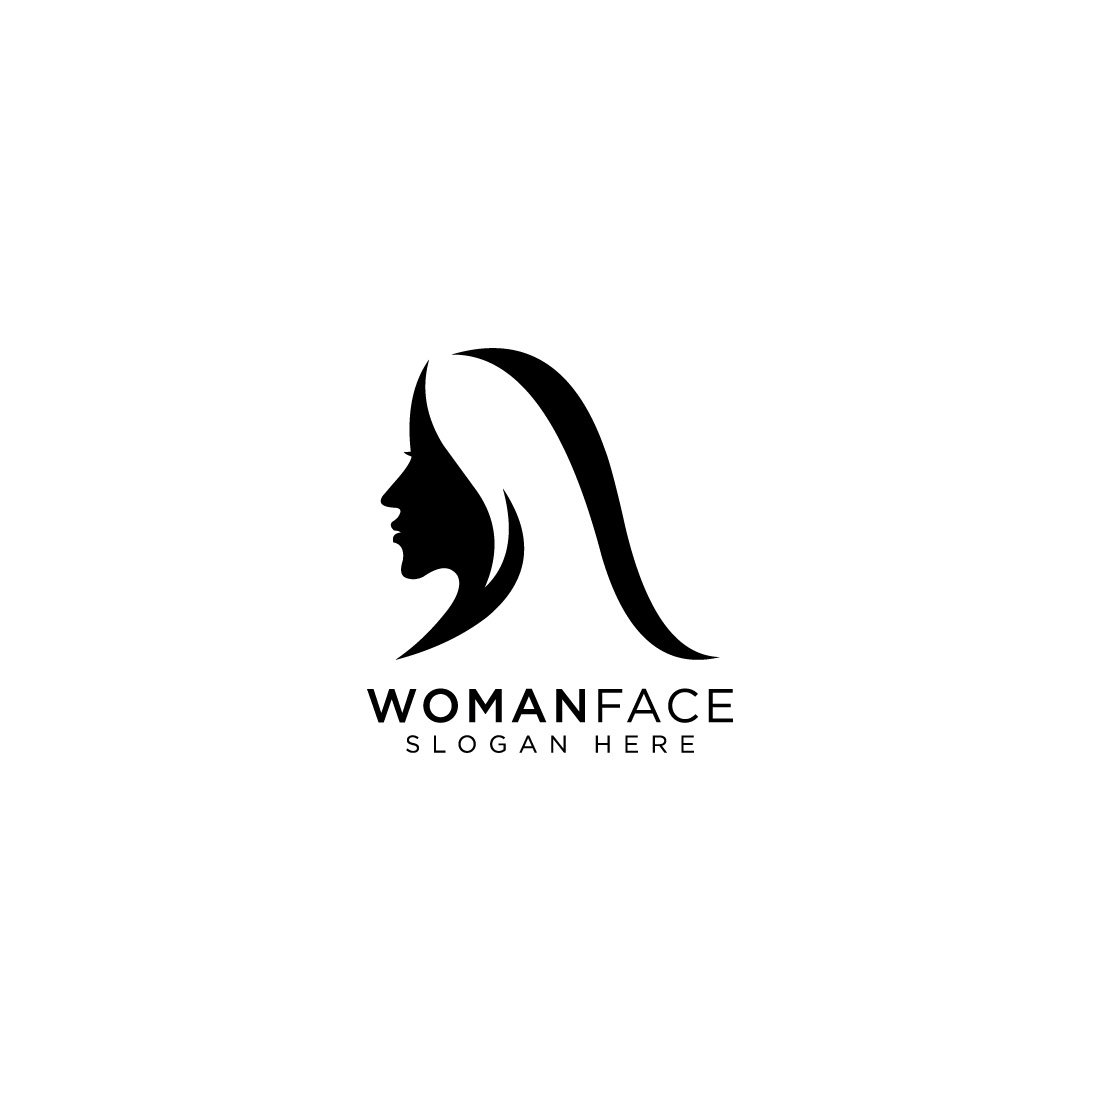 women face beauty logo vector design preview image.